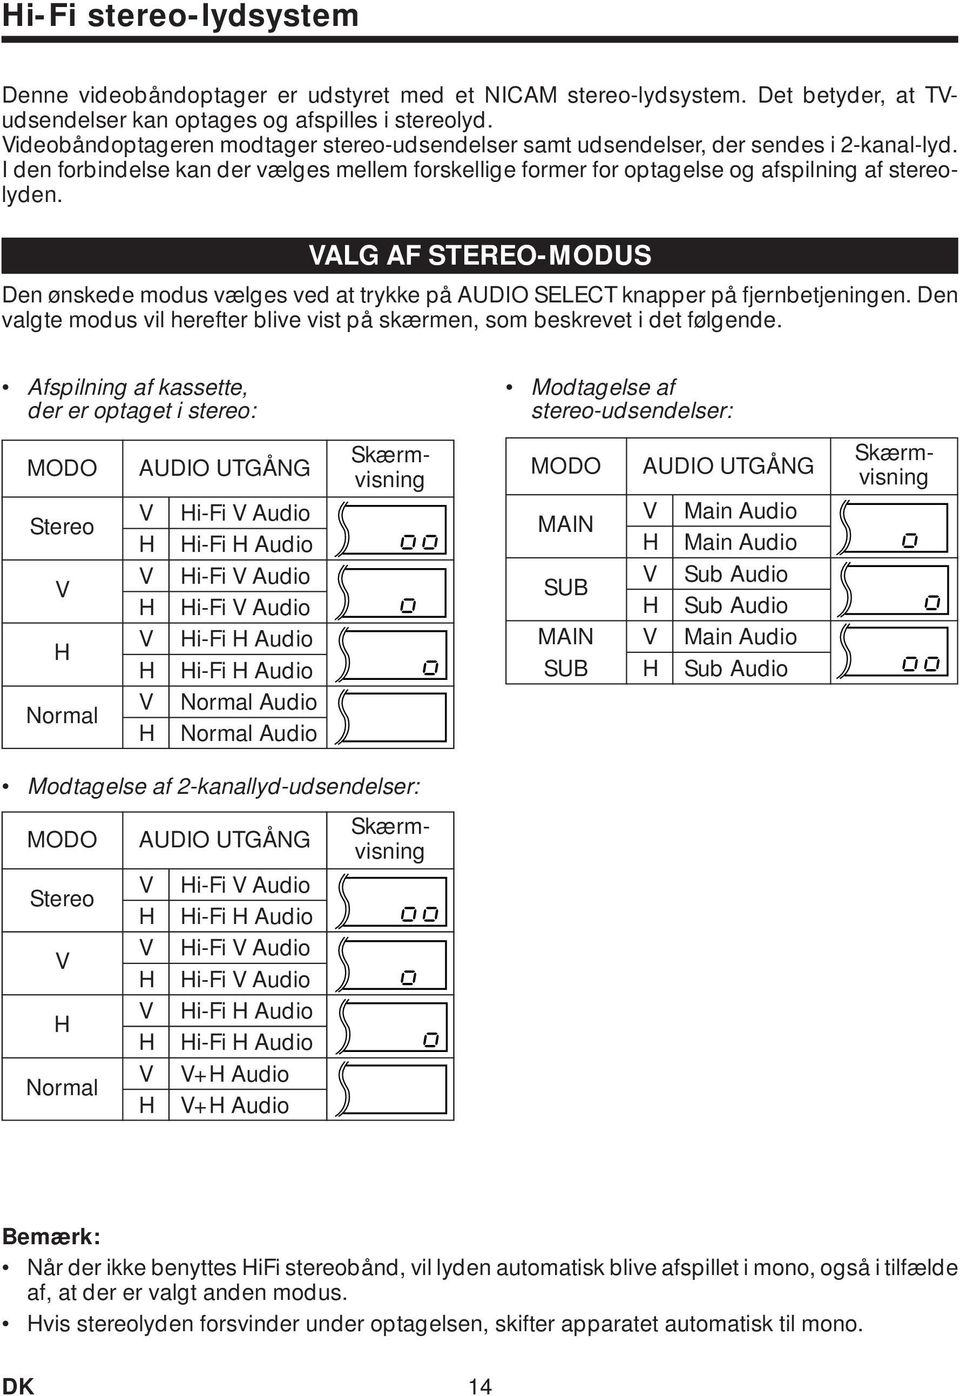 VALG AF STEREO-MODUS Den ønskede modus vælges ved at trykke på AUDIO SELECT knapper på fjernbetjeningen. Den valgte modus vil herefter blive vist på skærmen, som beskrevet i det følgende.